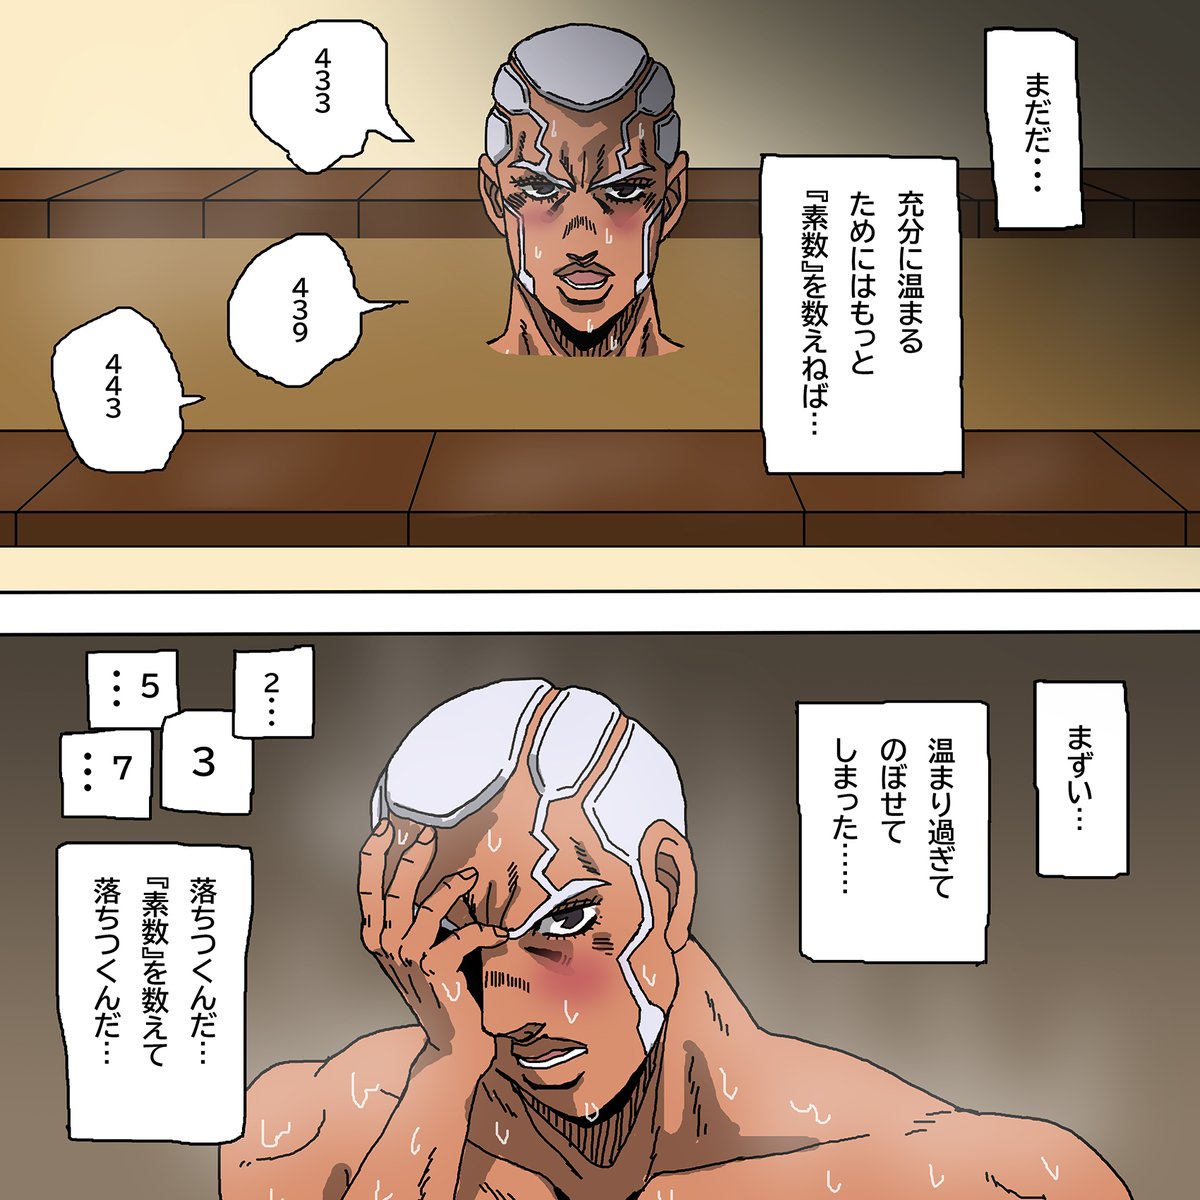 風呂で素数を数えるプッチ神父(今日はいい風呂の日)
#jojo_anime 